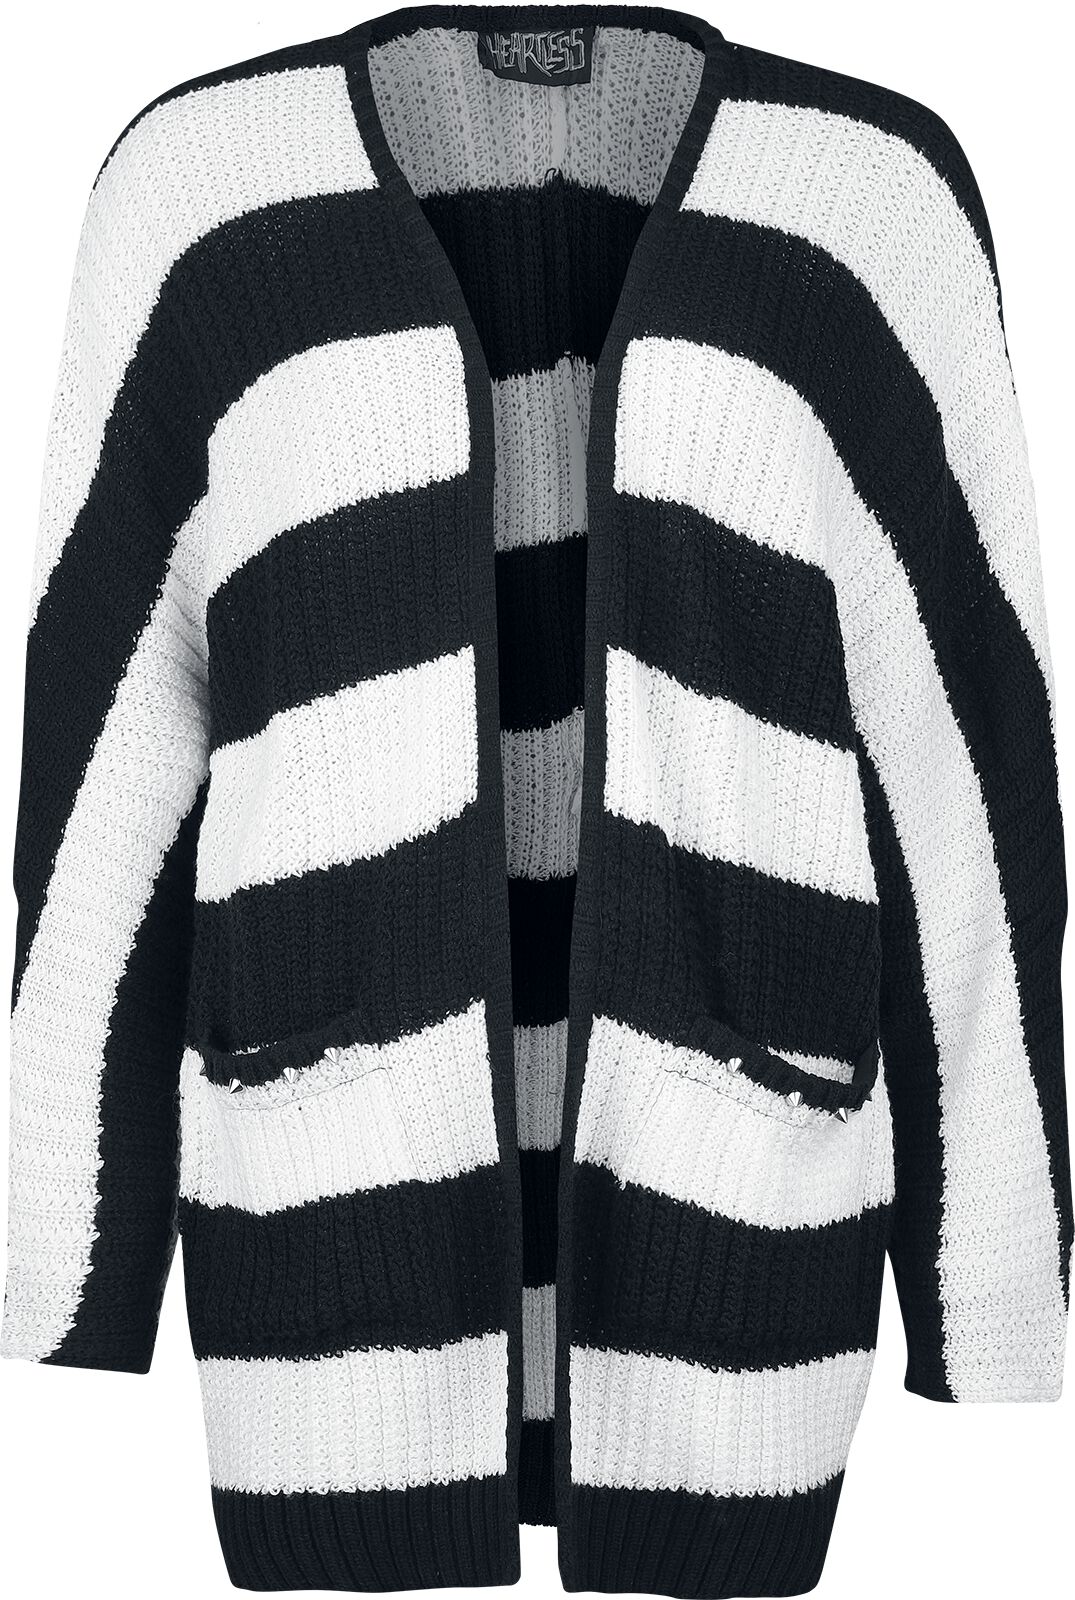 Heartless - Gothic Cardigan - In A Daze Cardigan - XL bis 4XL - für Damen - Größe XXL - schwarz/weiß